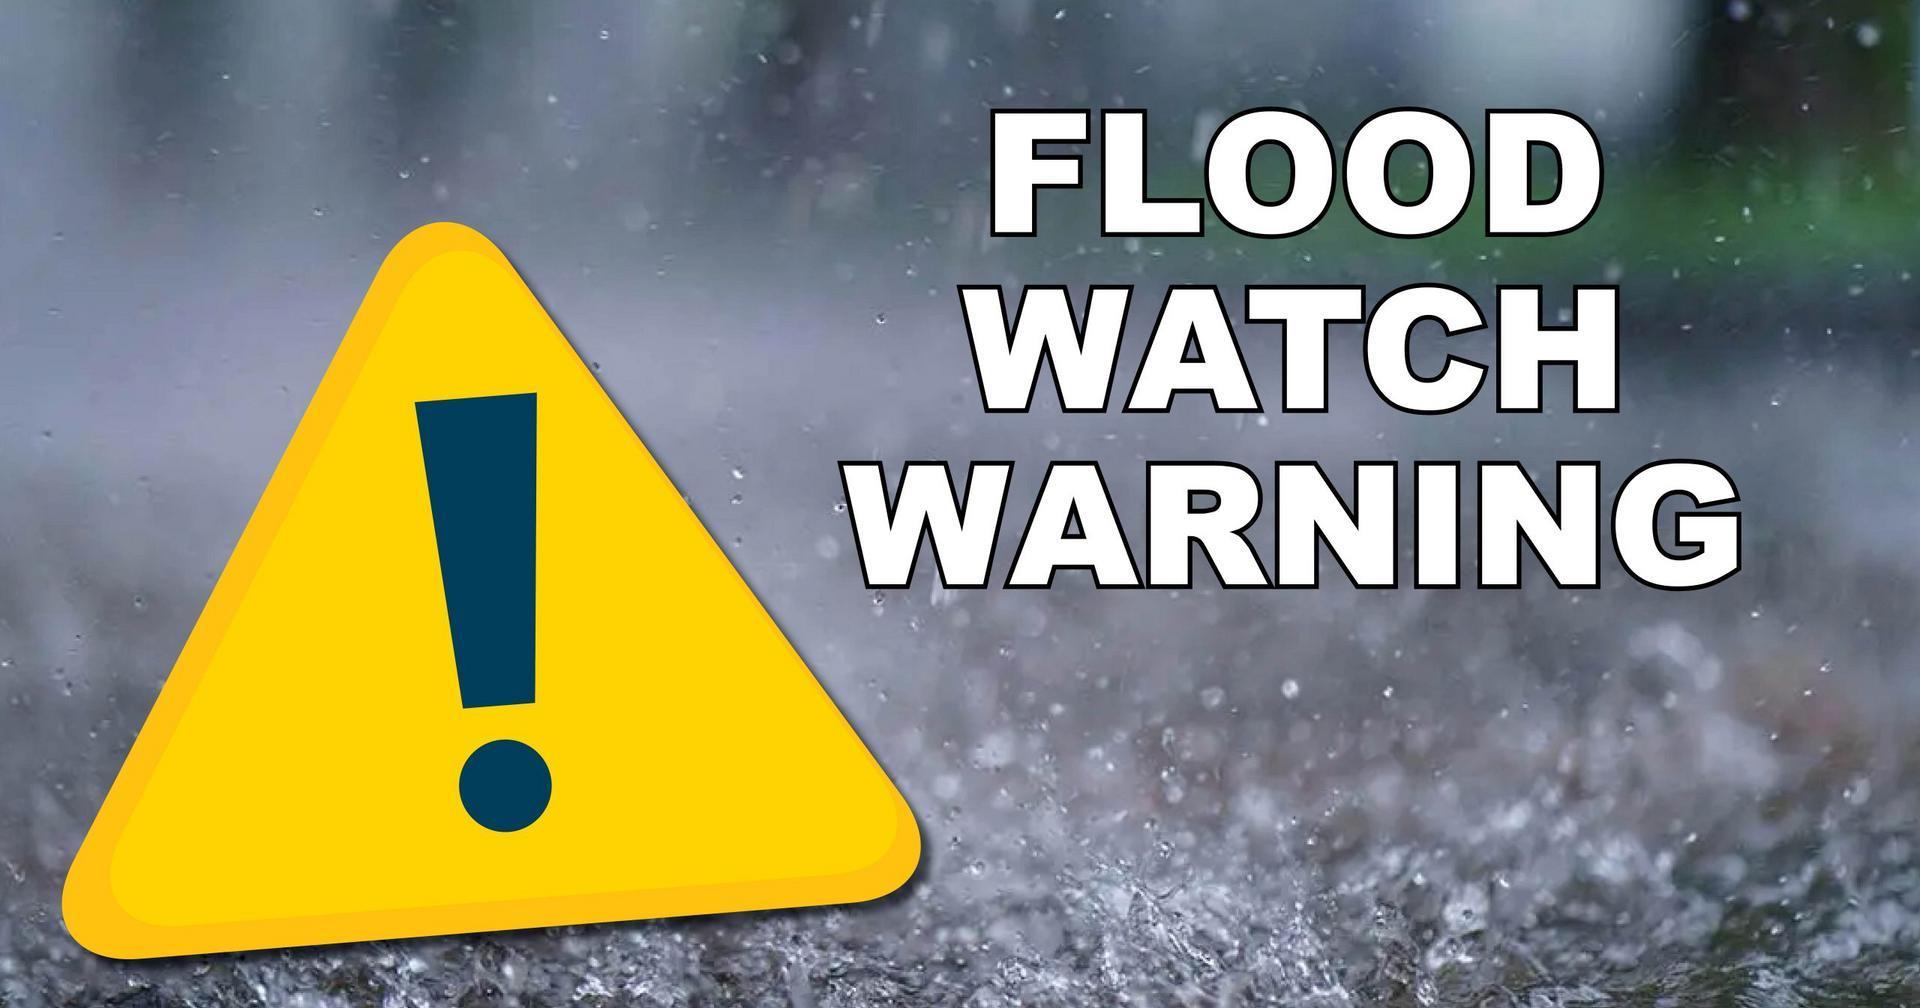 Flood-Watch-Warning--scaled.jpg